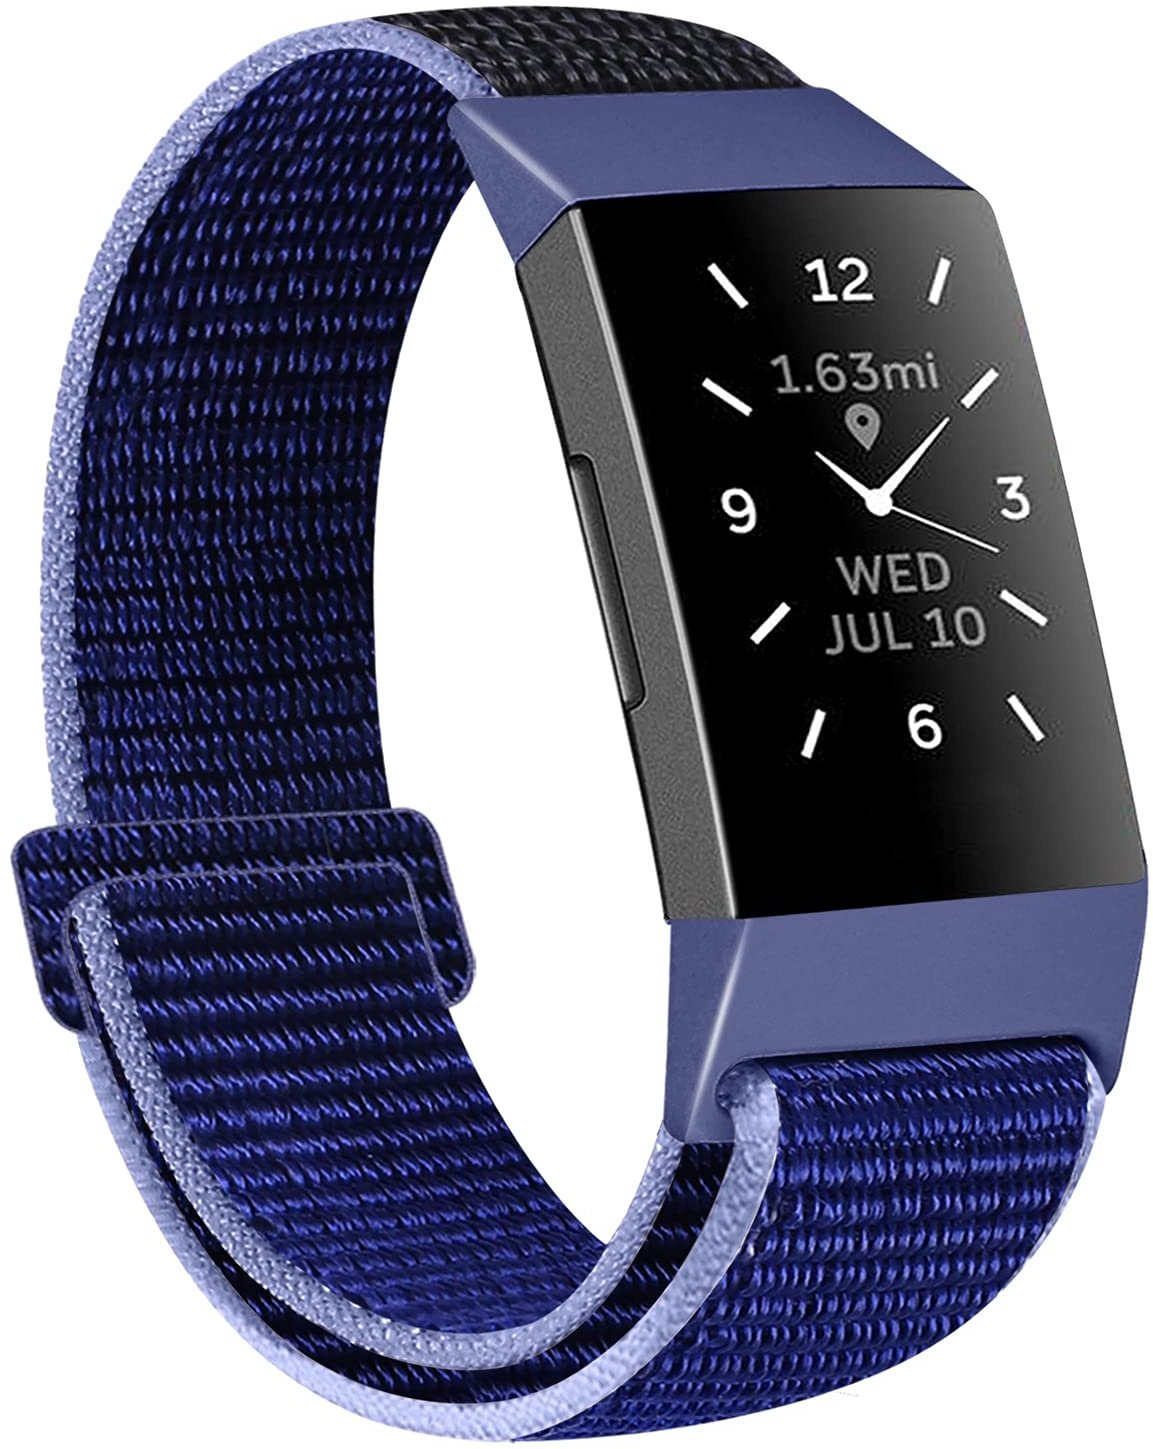 KIBDSNG Kompatibel mit Fitbit Charge 4/Charge 3/Charge 3 SE Riemen, weiches leichtes Nylon-Armband, Sport-bänder für Männer und Frauen (Midnight Blue)